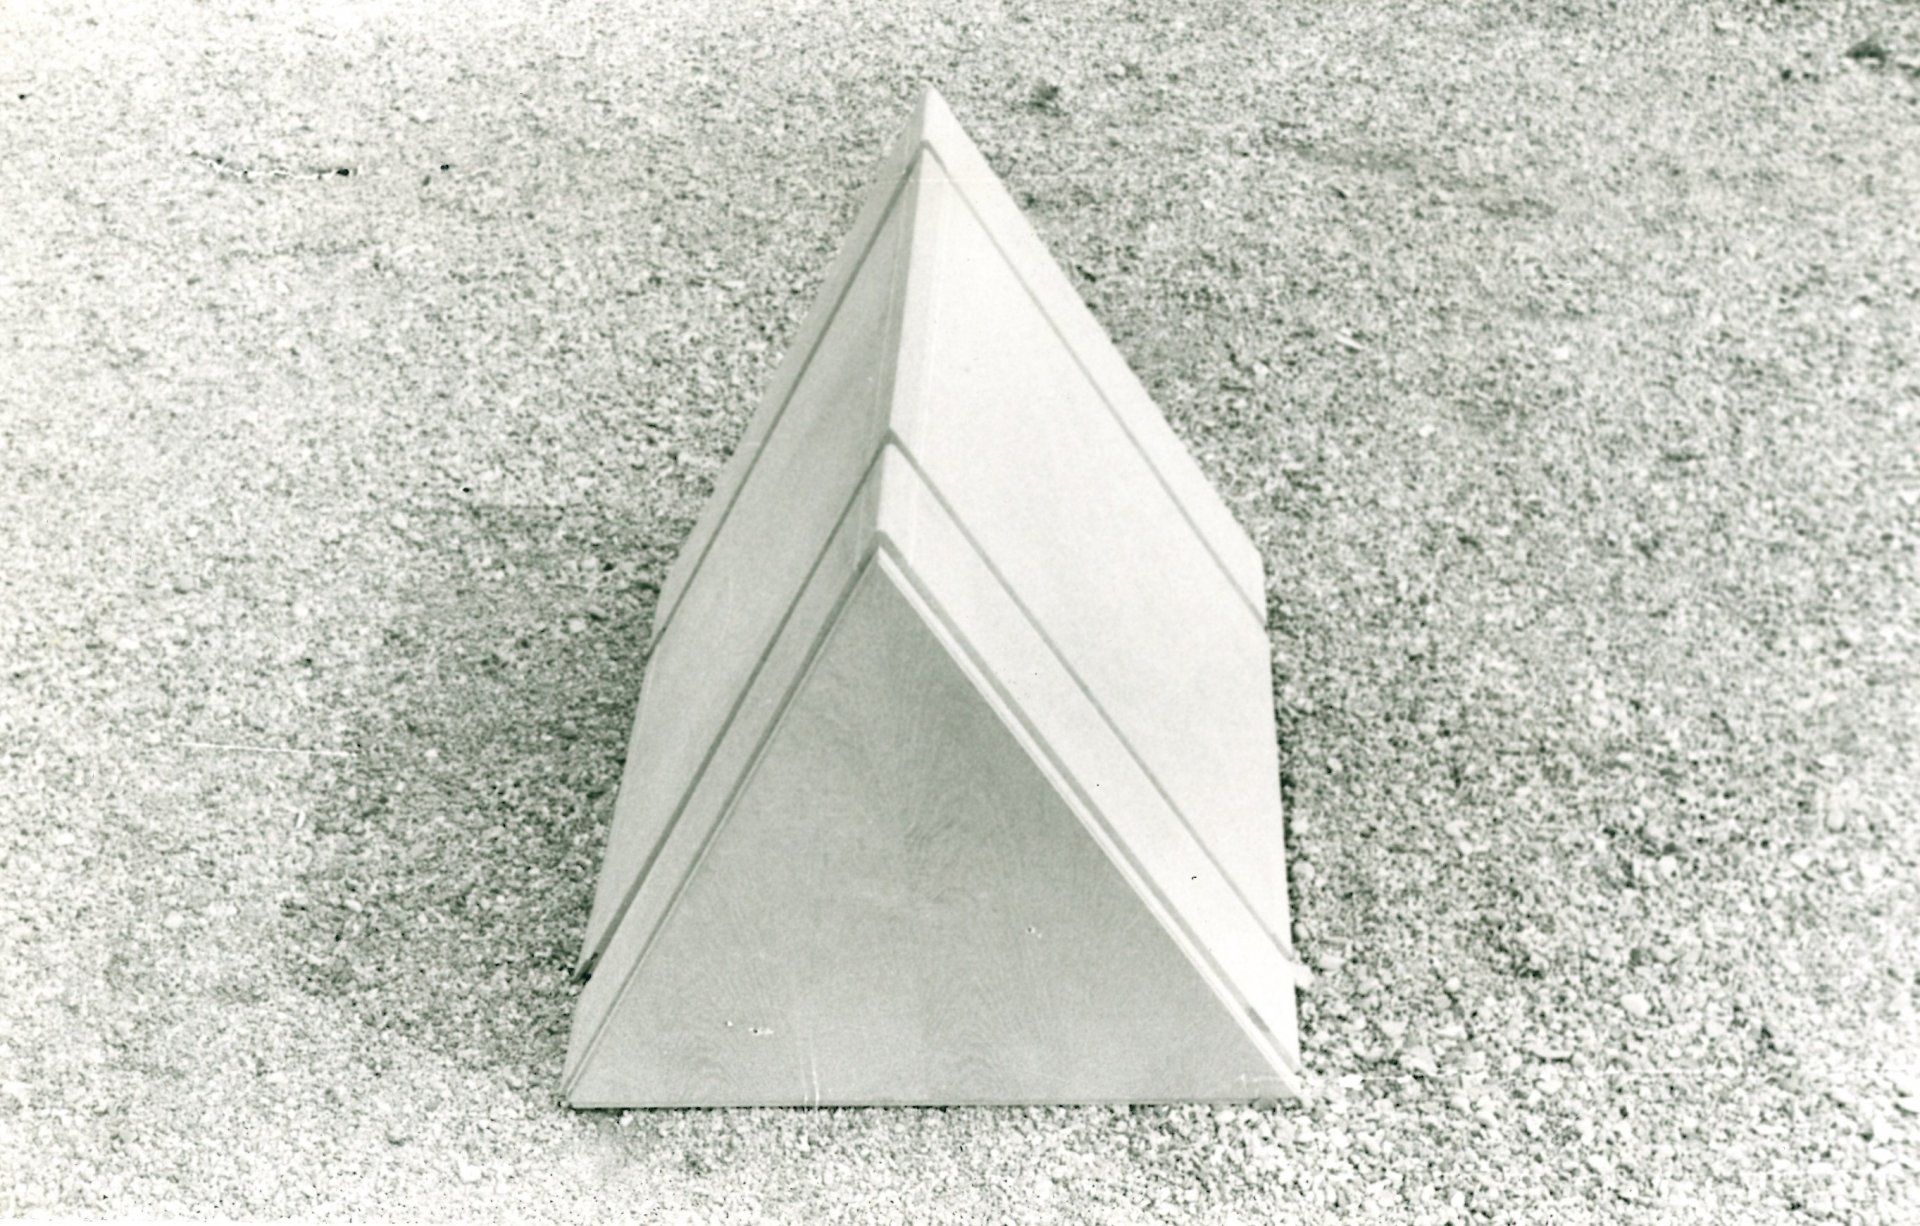 Ugo La Pietra, prototipo di un elemento del progetto Occultamento, 1972 - Foto 1 (1)